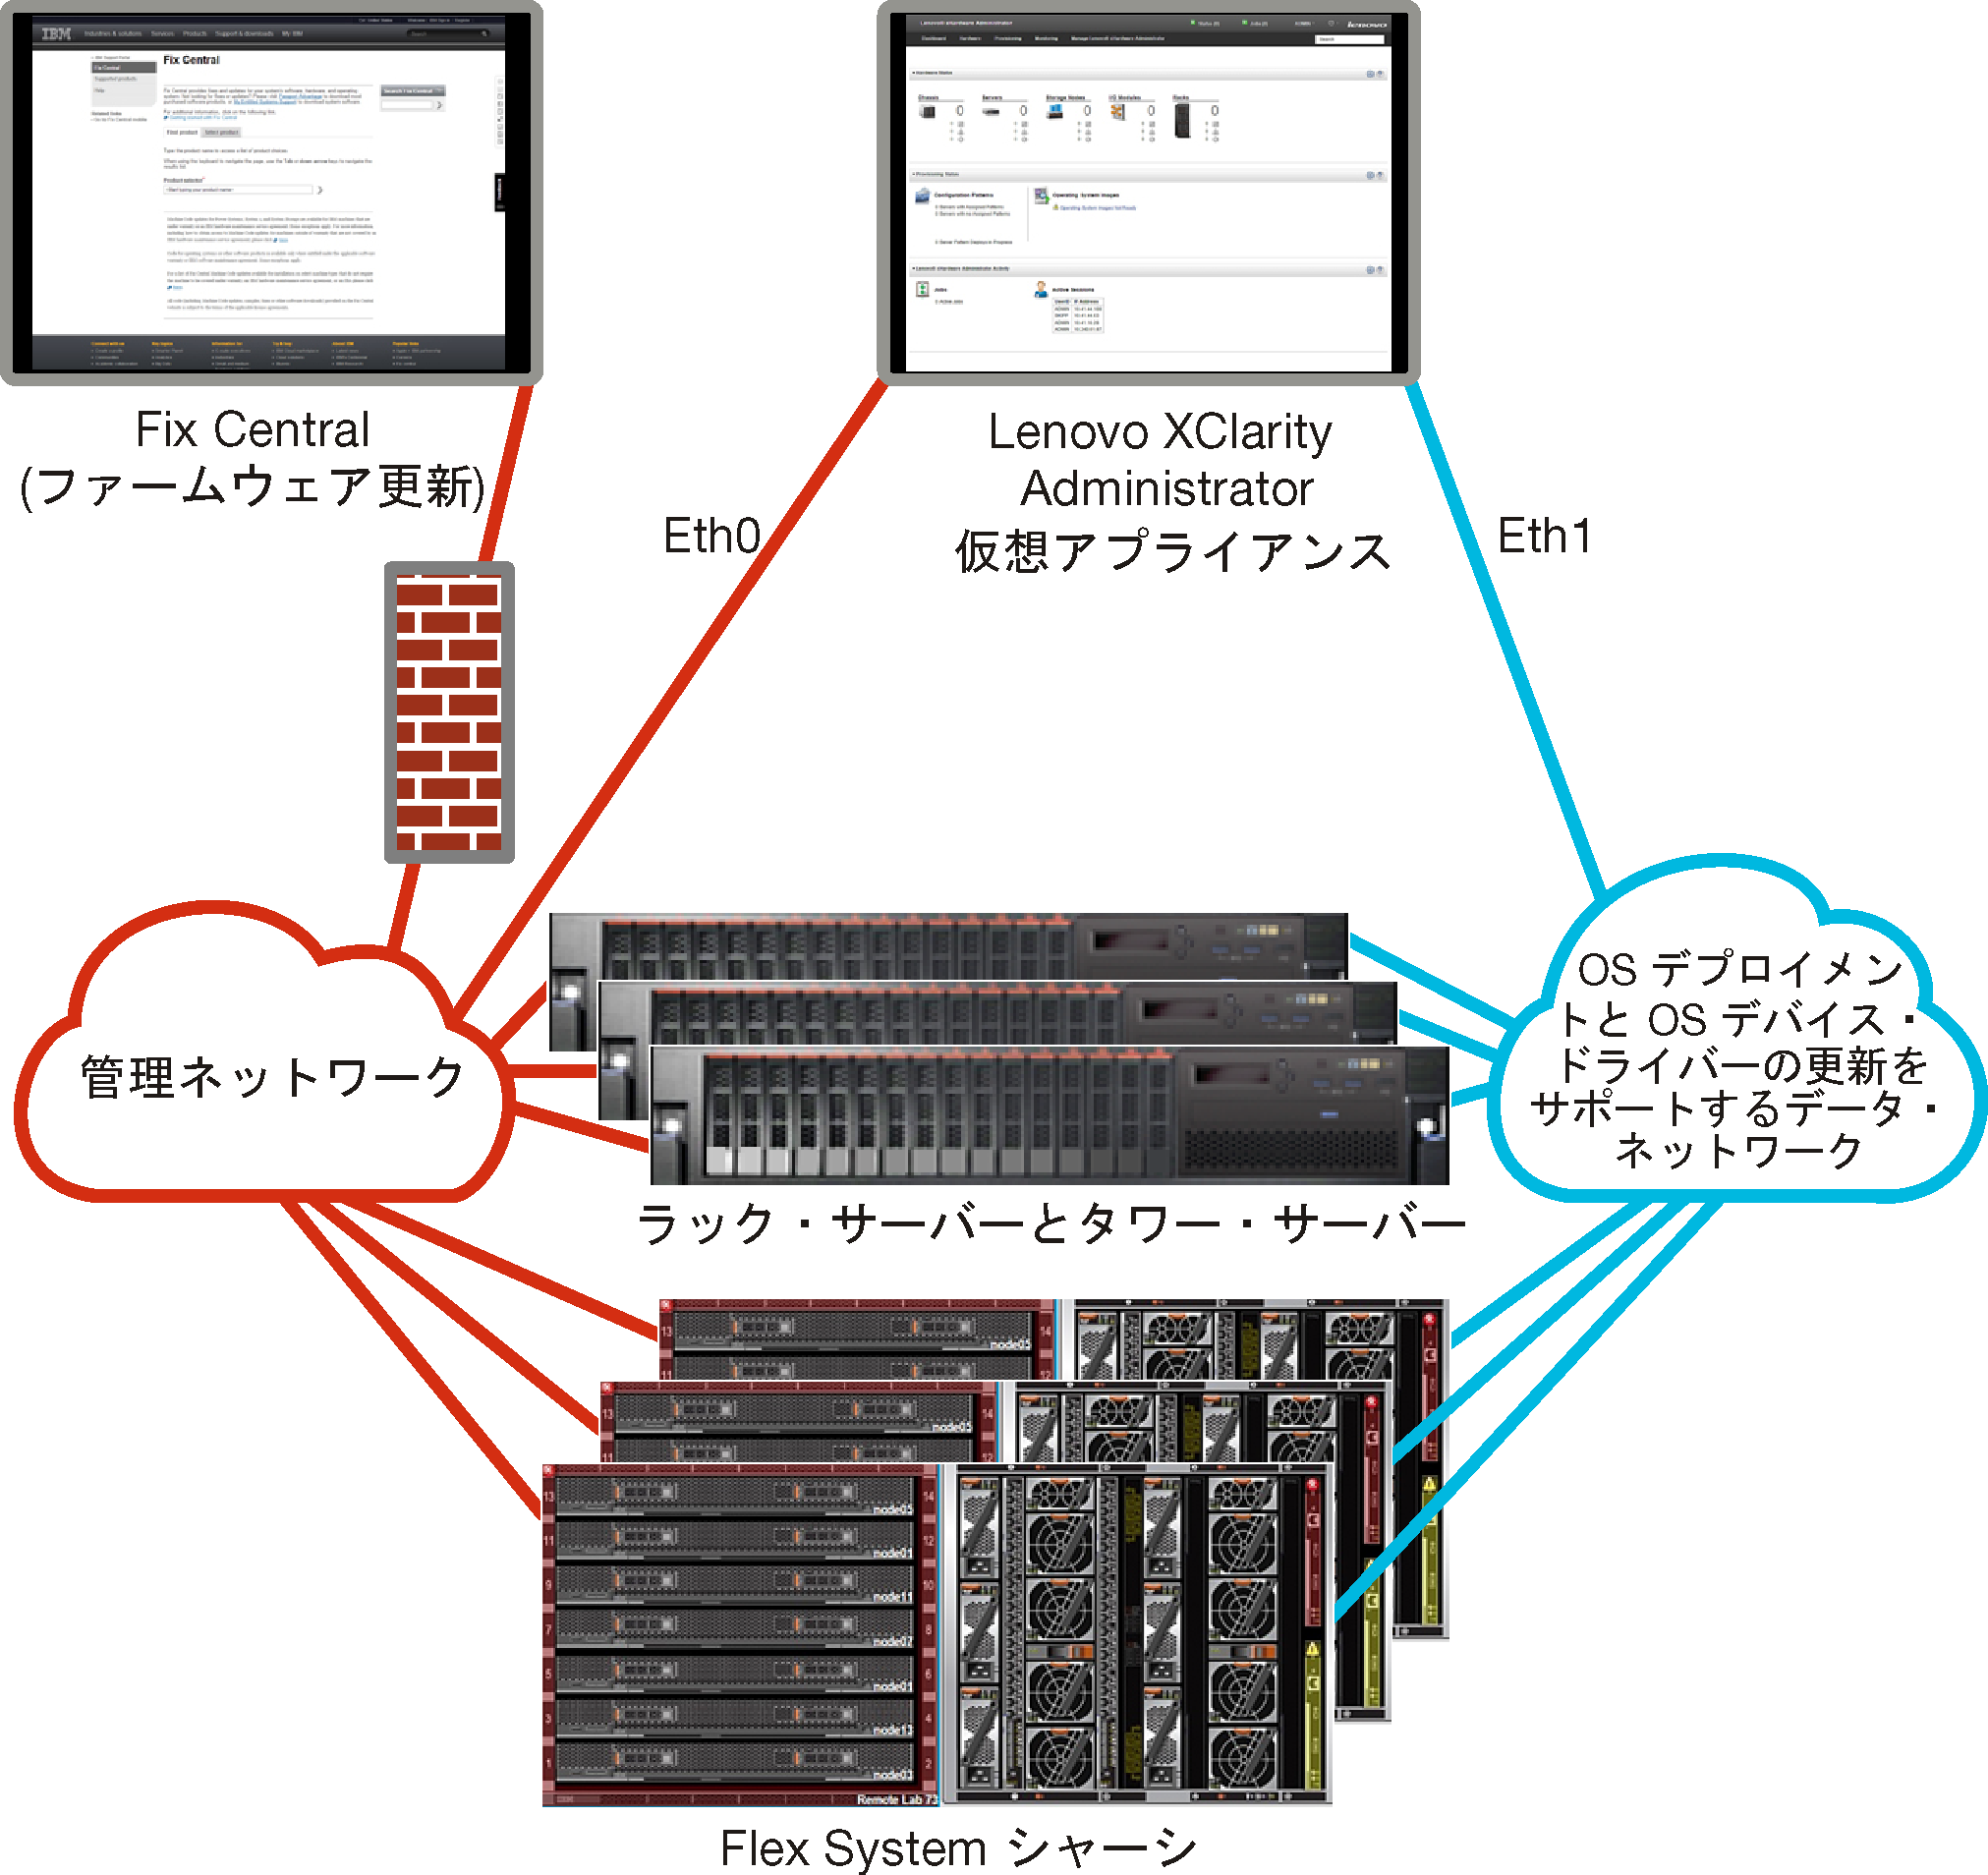 分離したデータ/管理ネットワークの概要を示す図。オペレーティング・システム・デプロイメント・ネットワークはデータ・ネットワークの一部として設定されています。